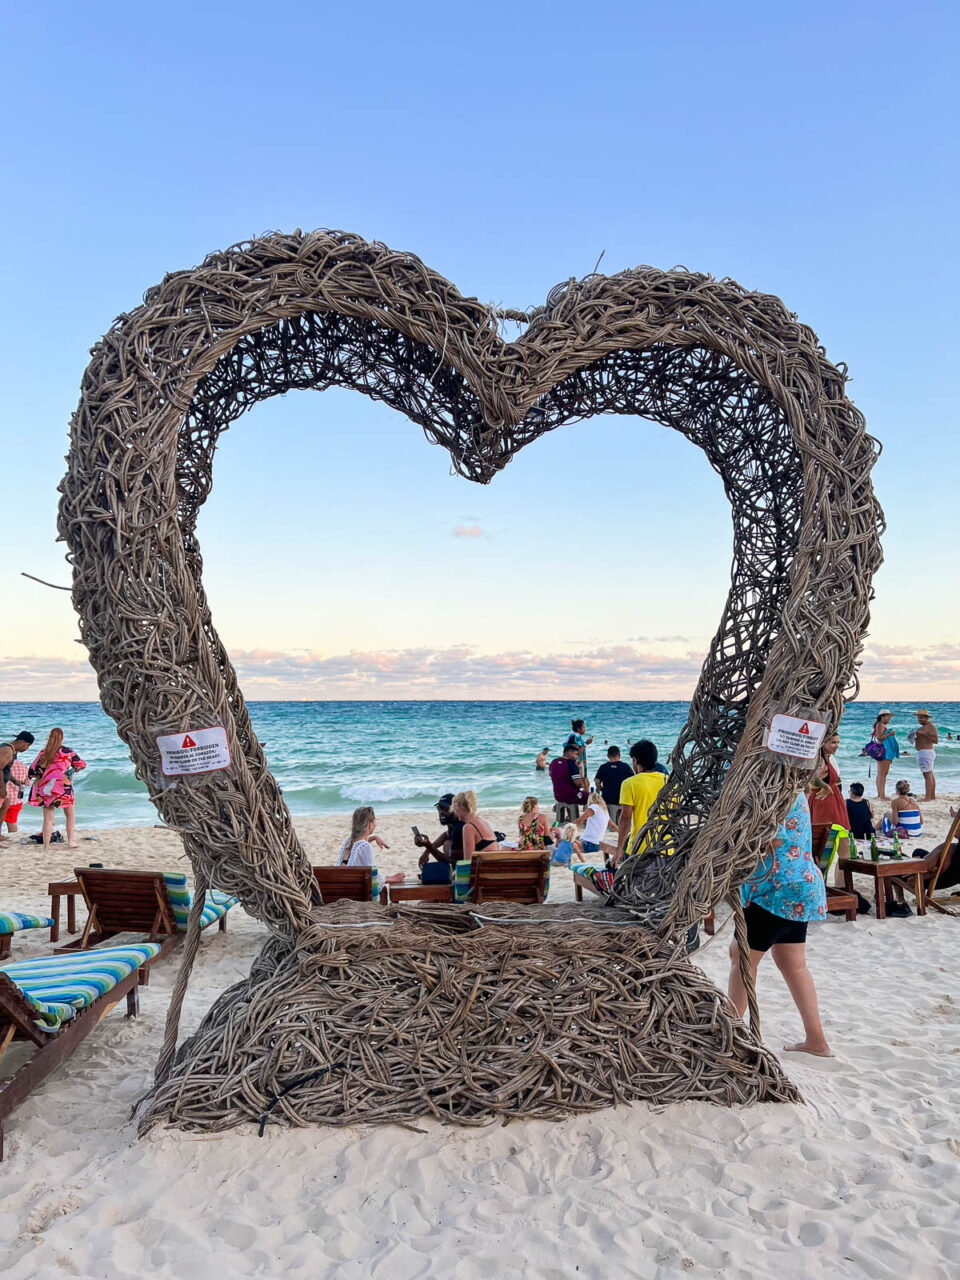 Heart sculpture on the beach in Playa del Carmen